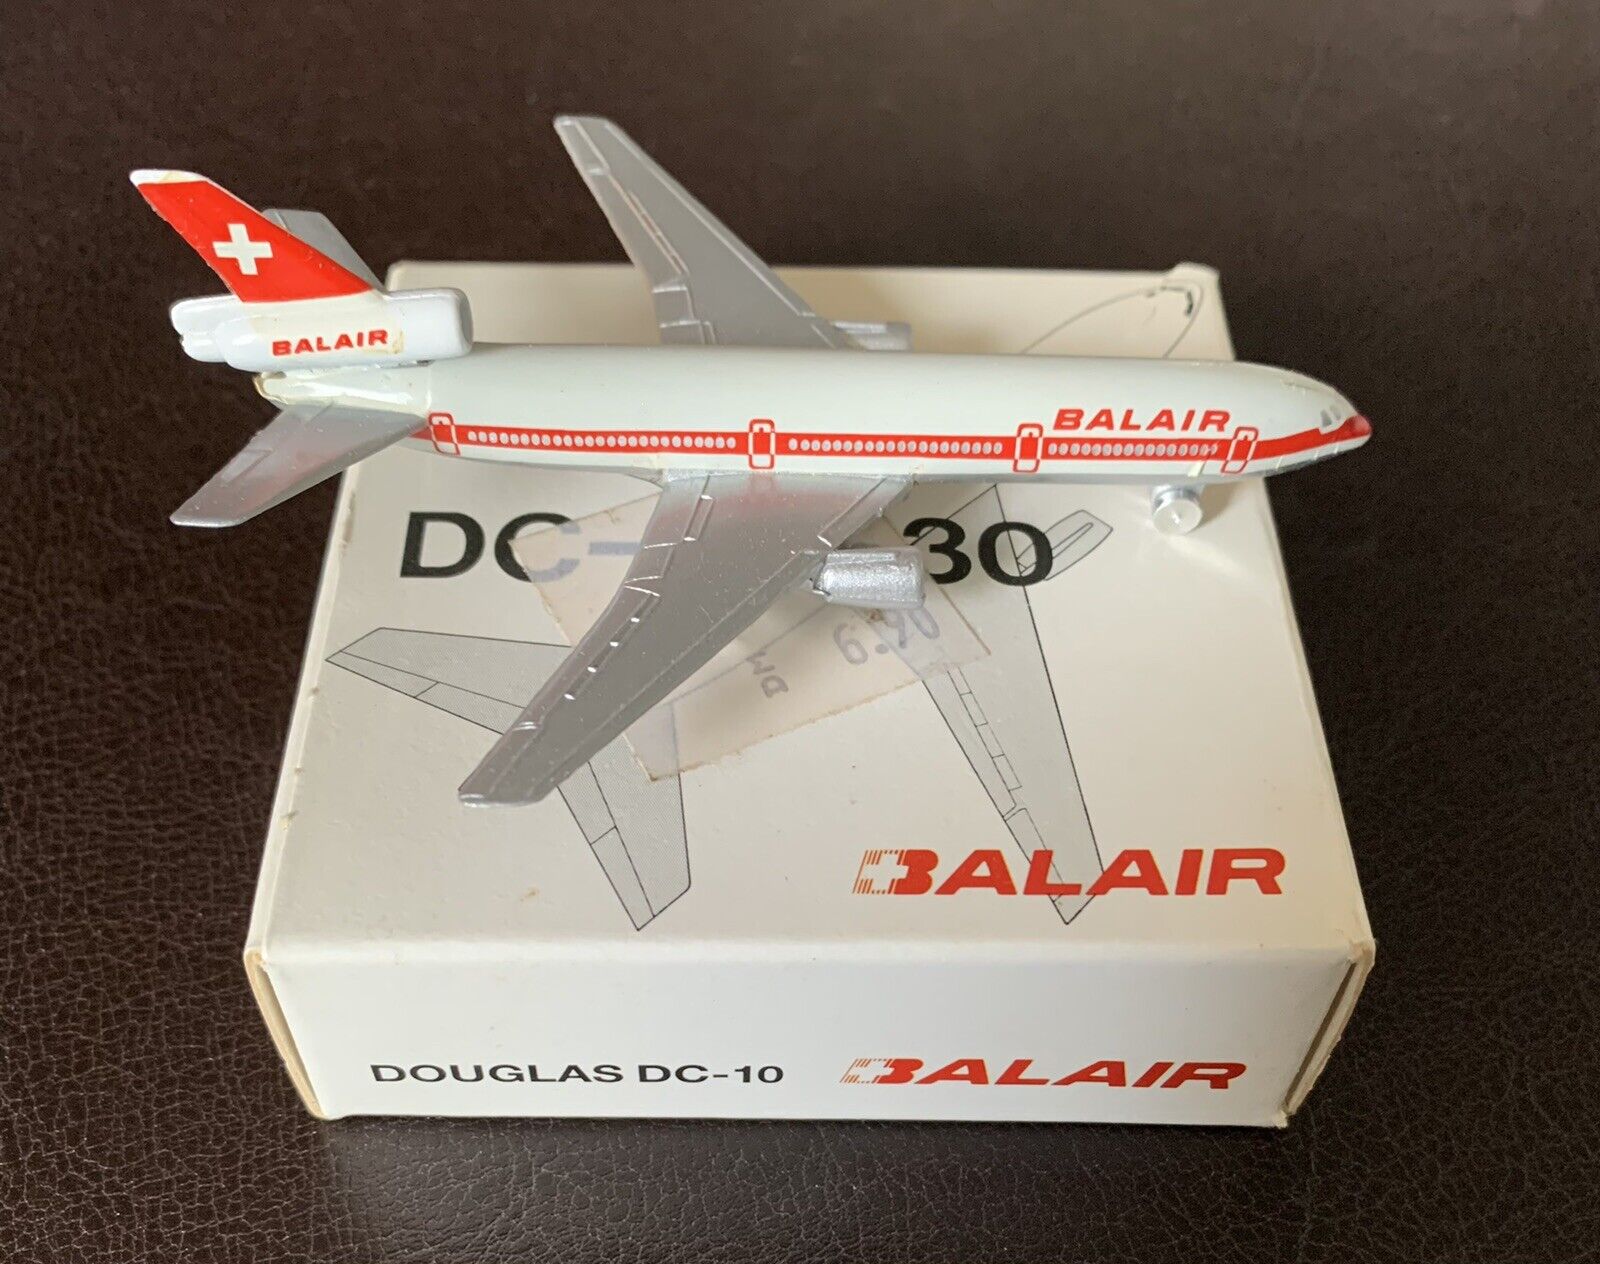 BALAIR / Douglas DC-10 / Schabak 1:600 Scale / Excellent Condition